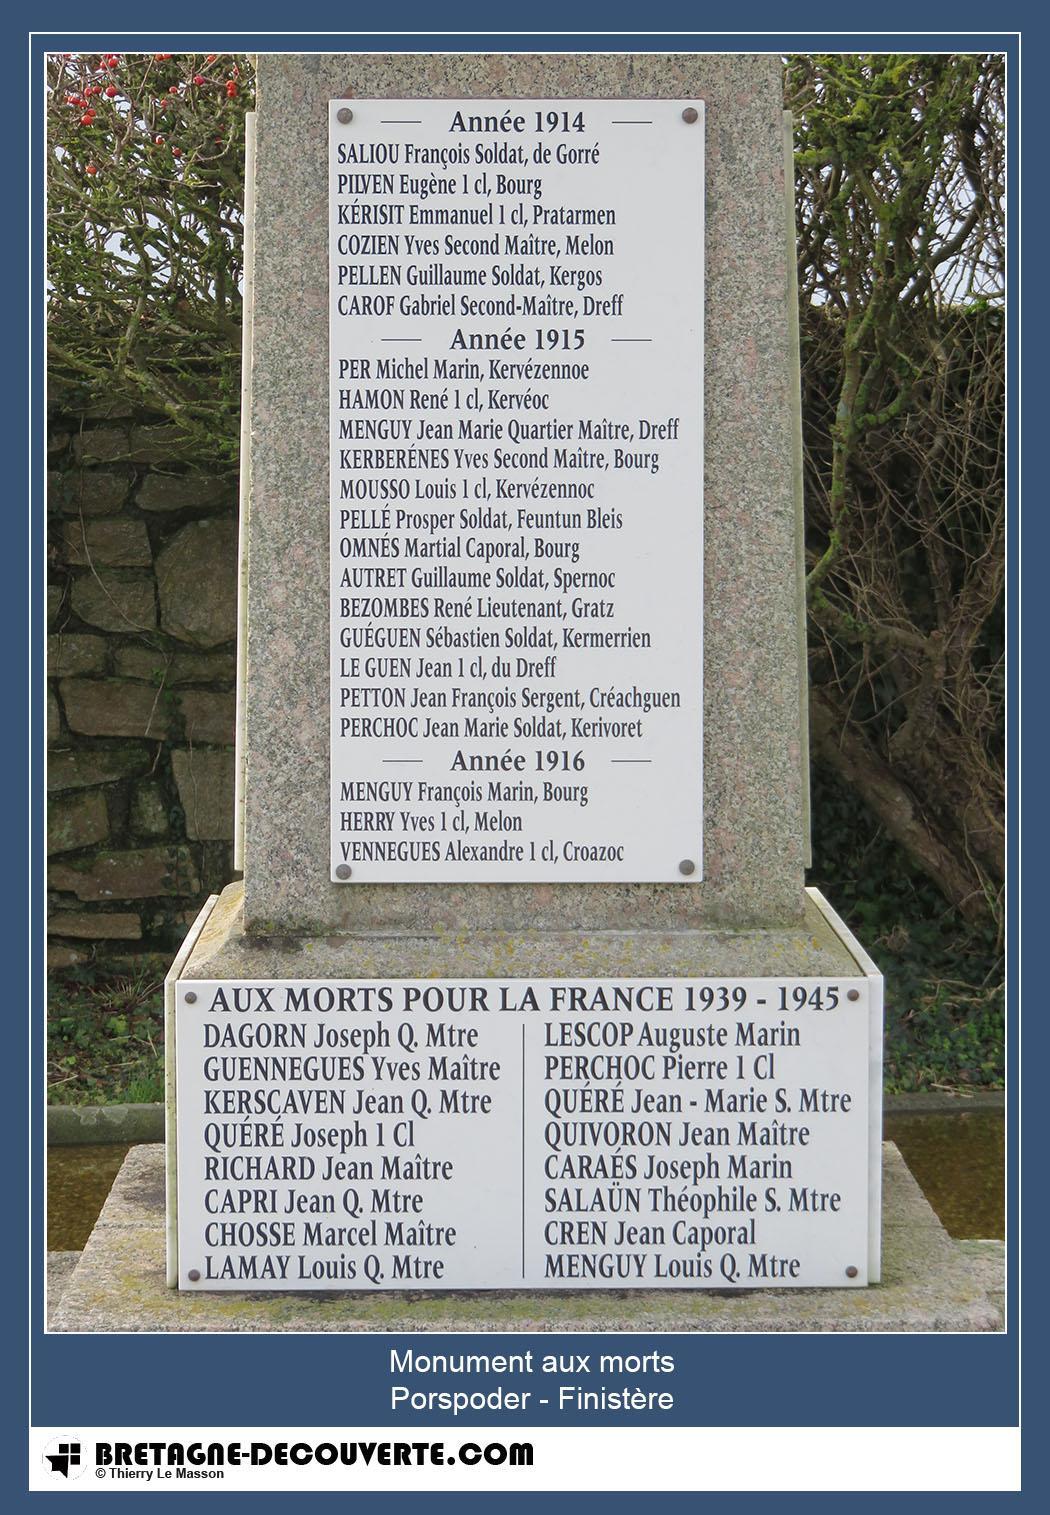 Les noms gravés sur le monument aux morts de Porspoder